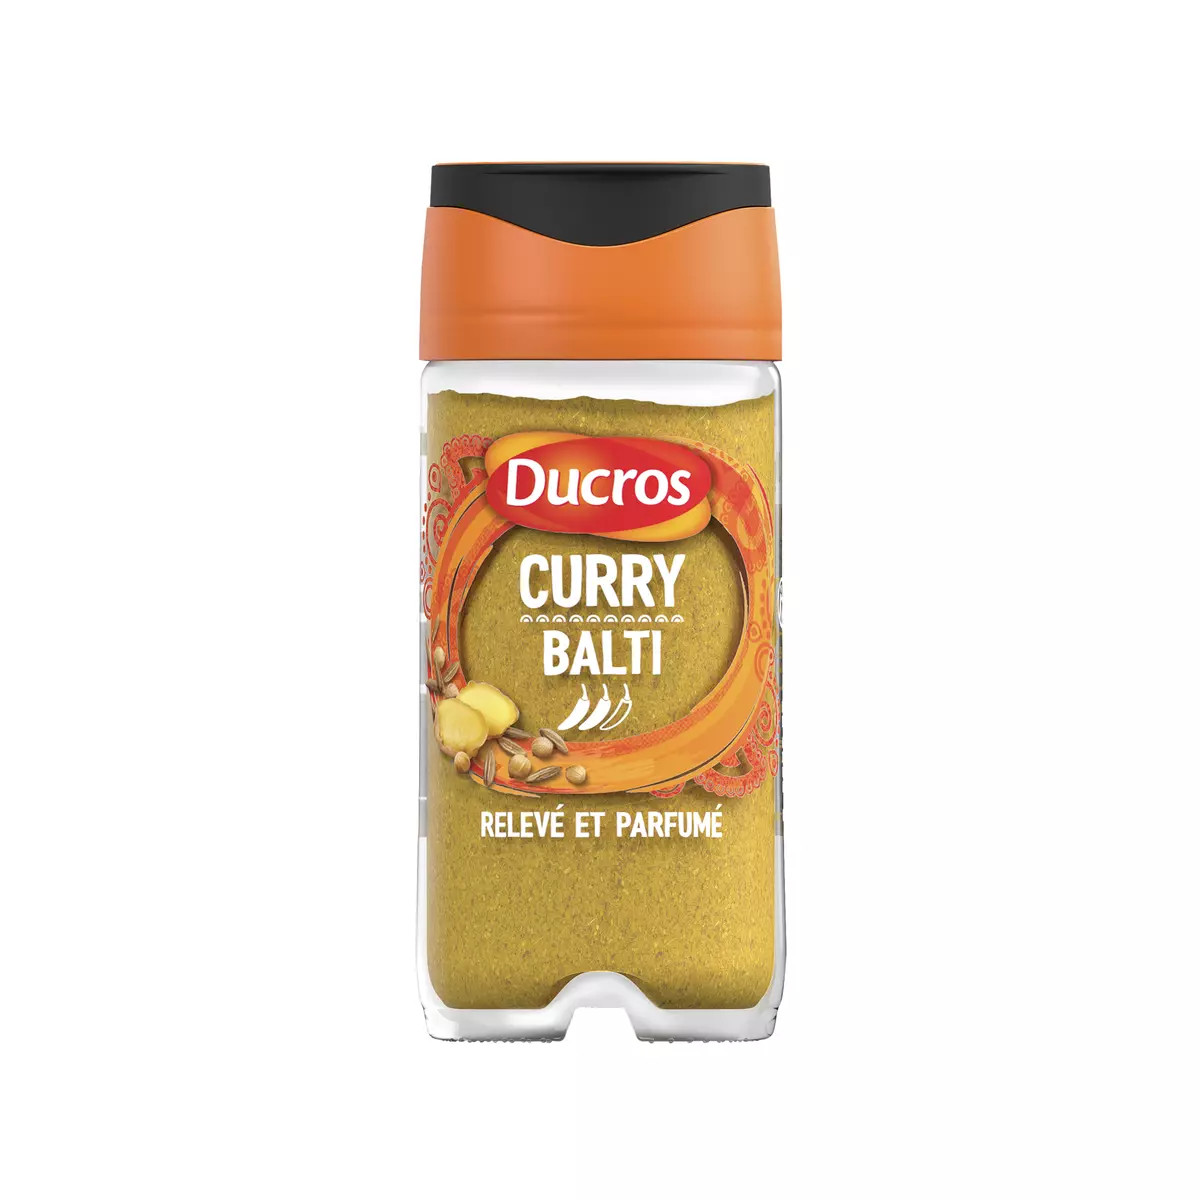 DUCROS Curry Balti relevé et parfumé 39g